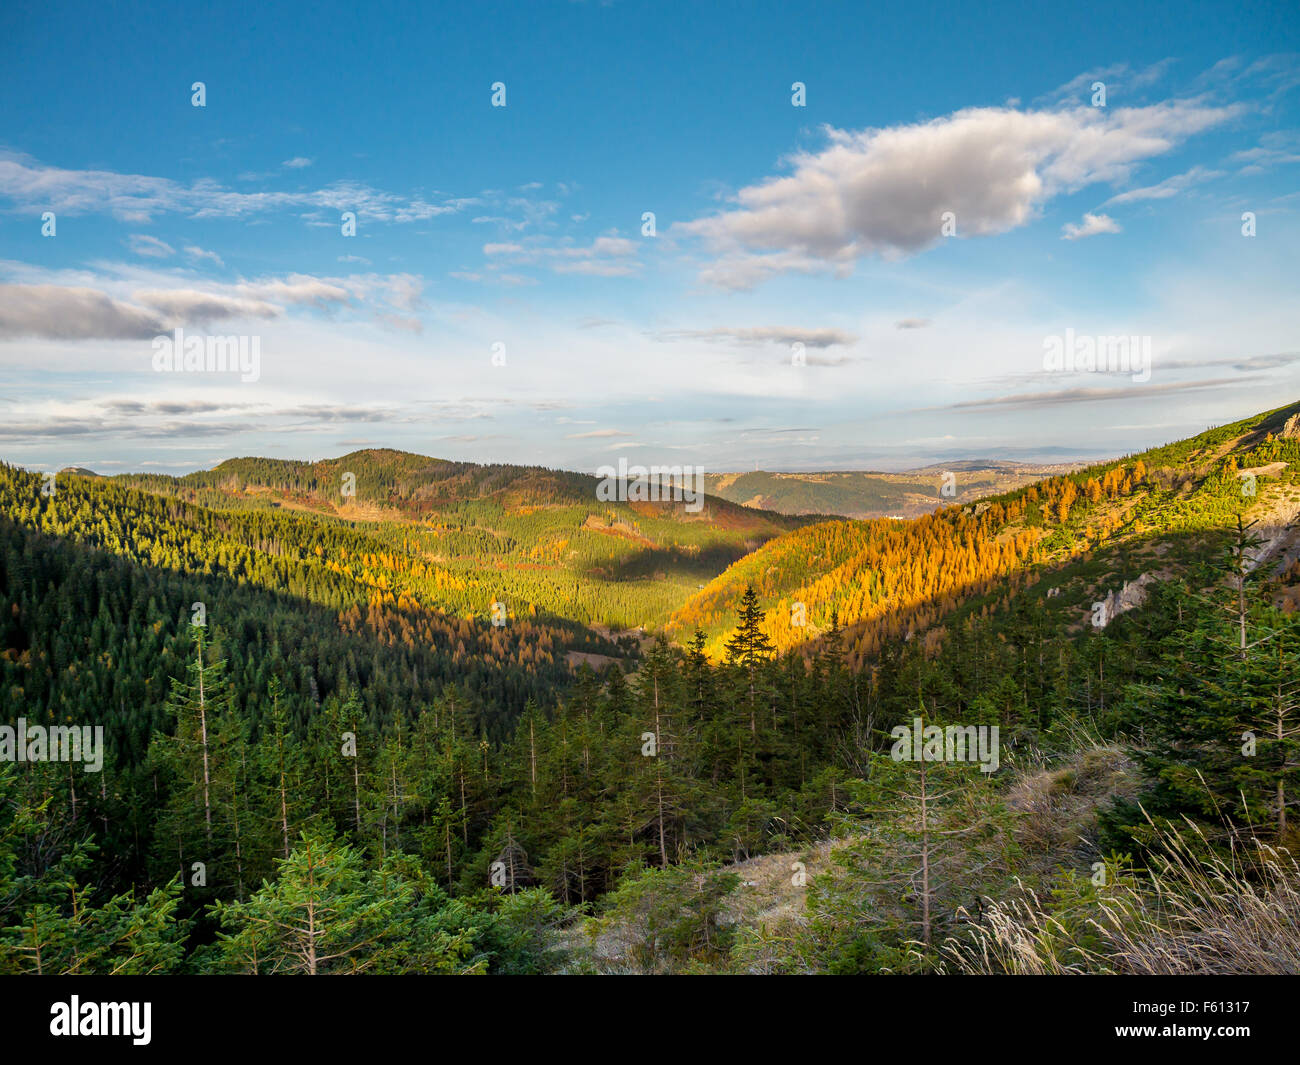 Belle vue sur les vallées et collines couvertes d'épinettes et de mélèzes vu depuis le sentier dans les Tatras, Pologne Banque D'Images